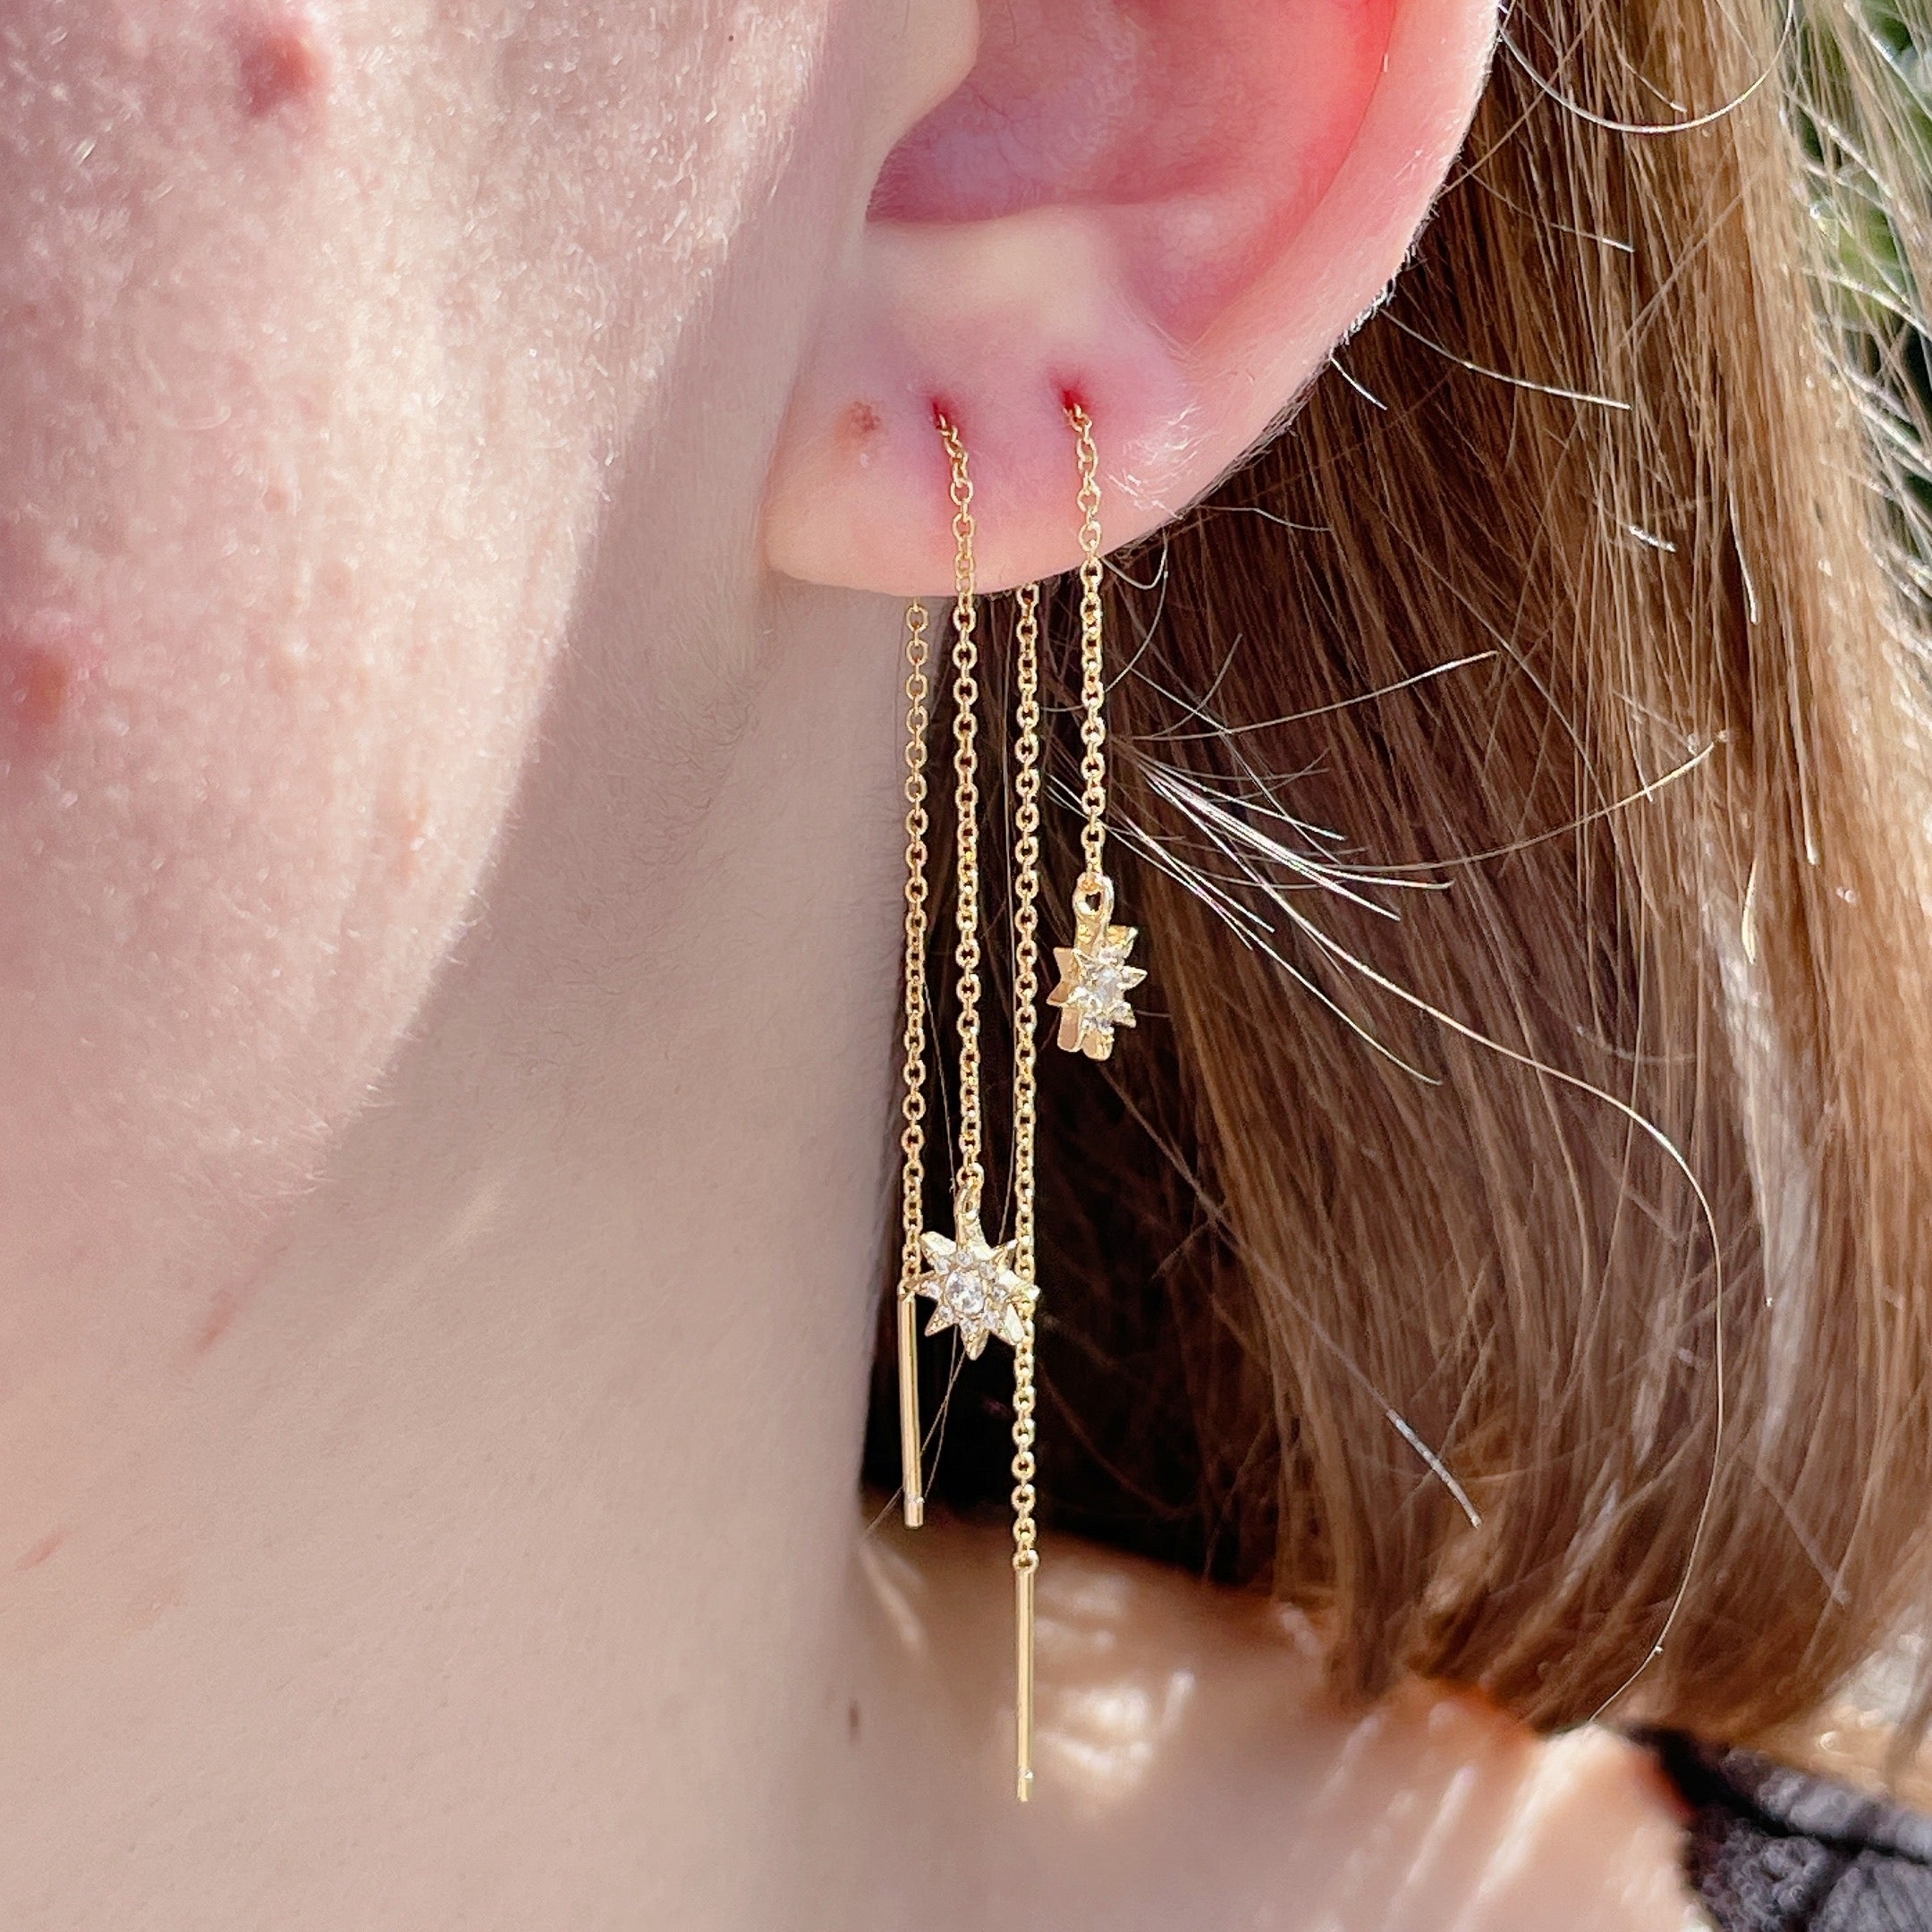 MINI STARBURST Diamond Threader Earrings | Gold